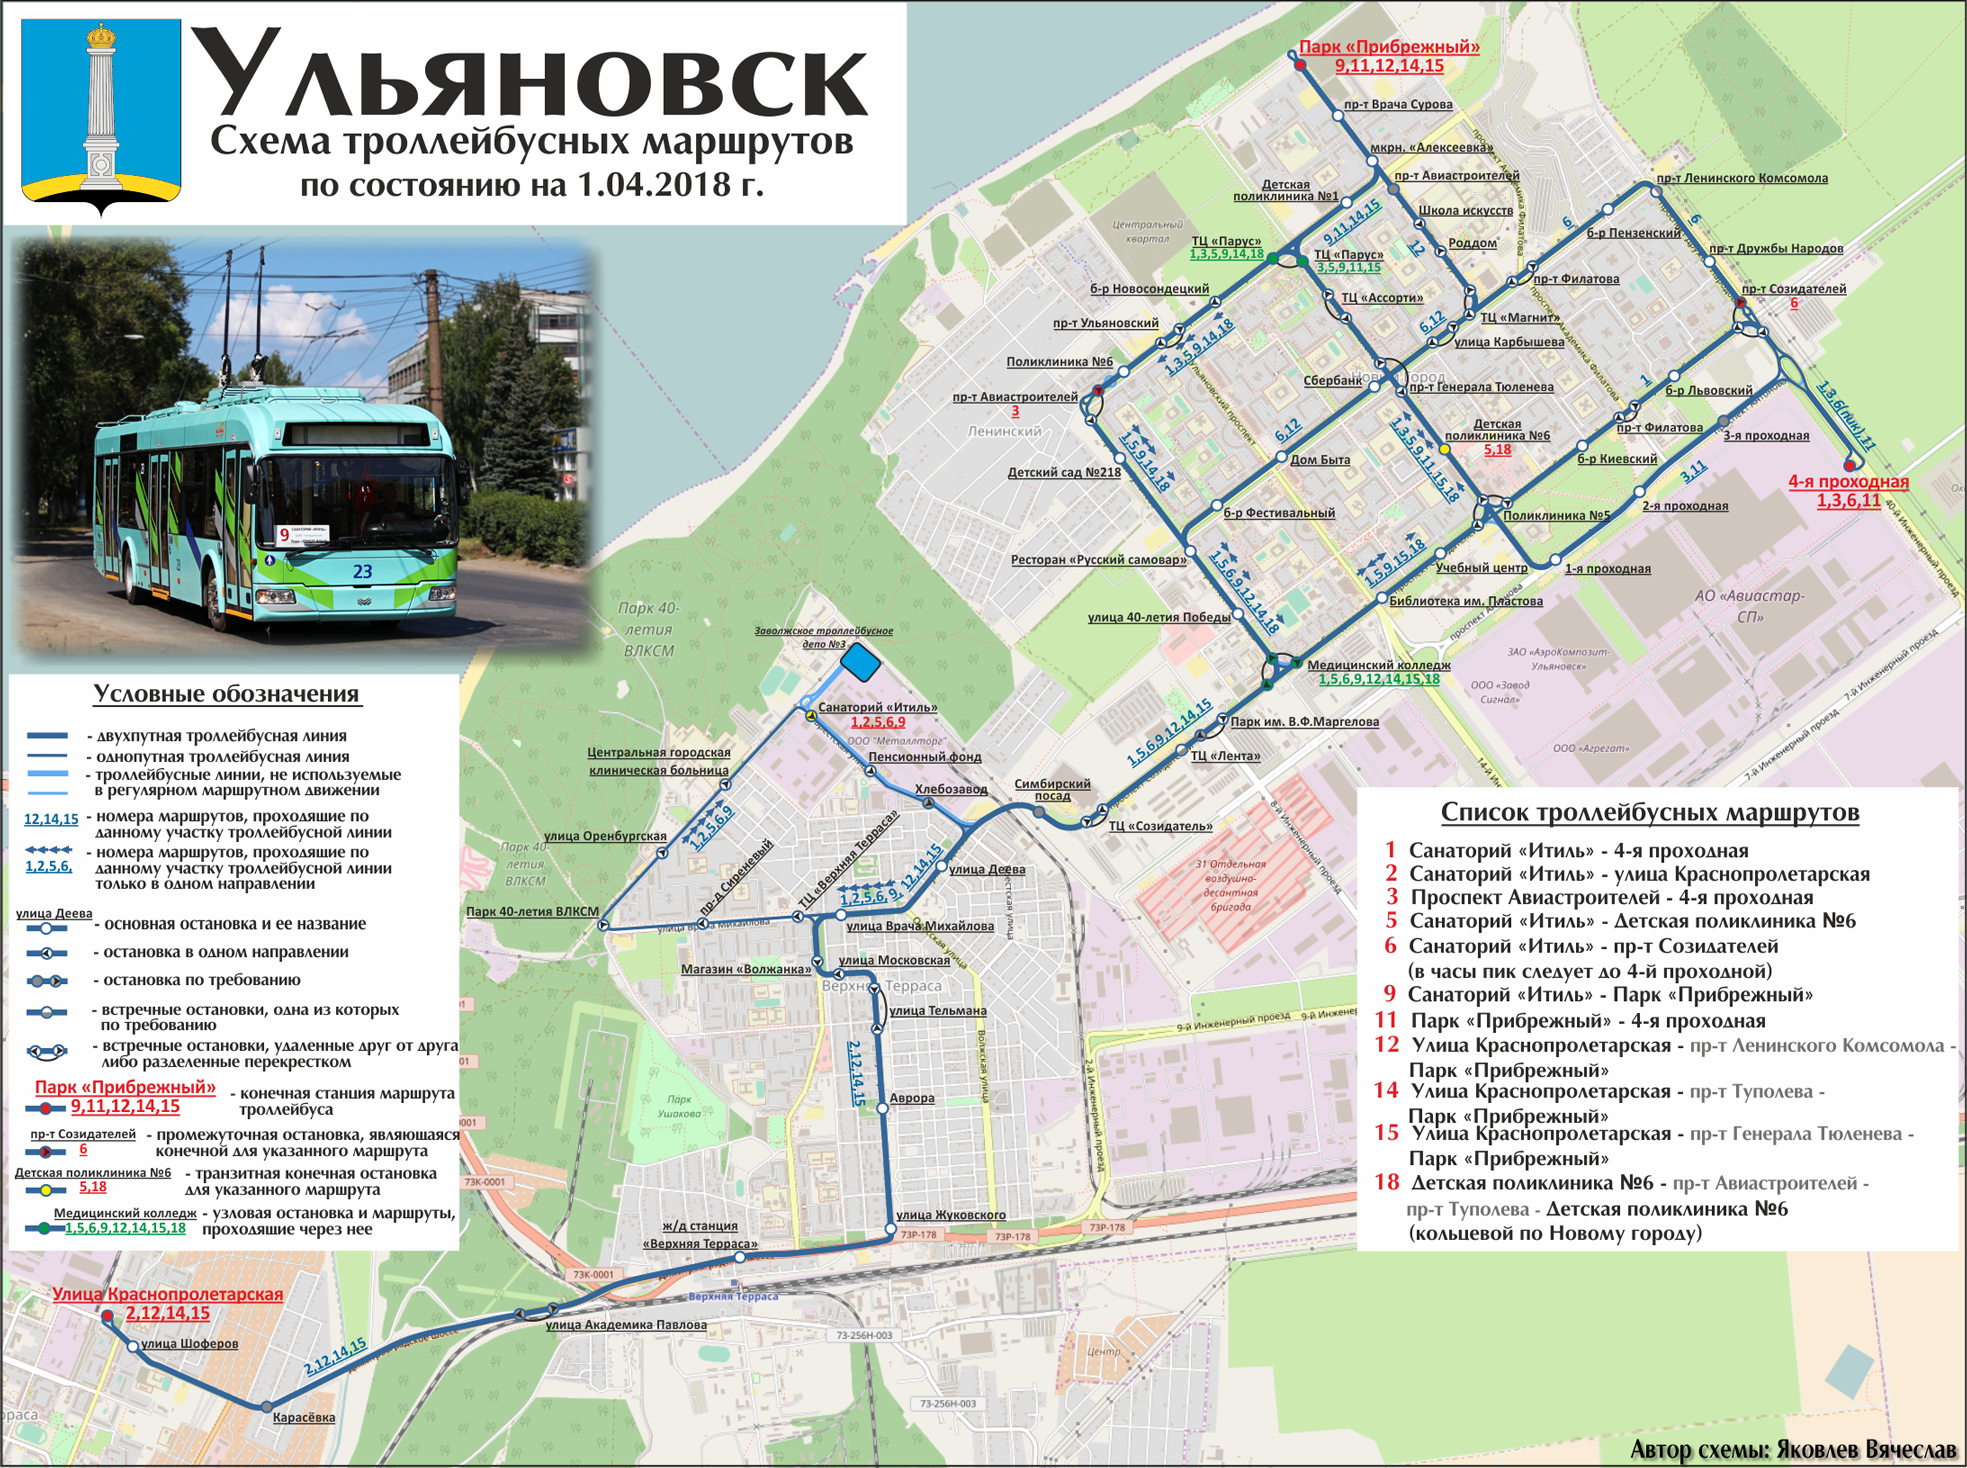 Ульяновск — Схемы